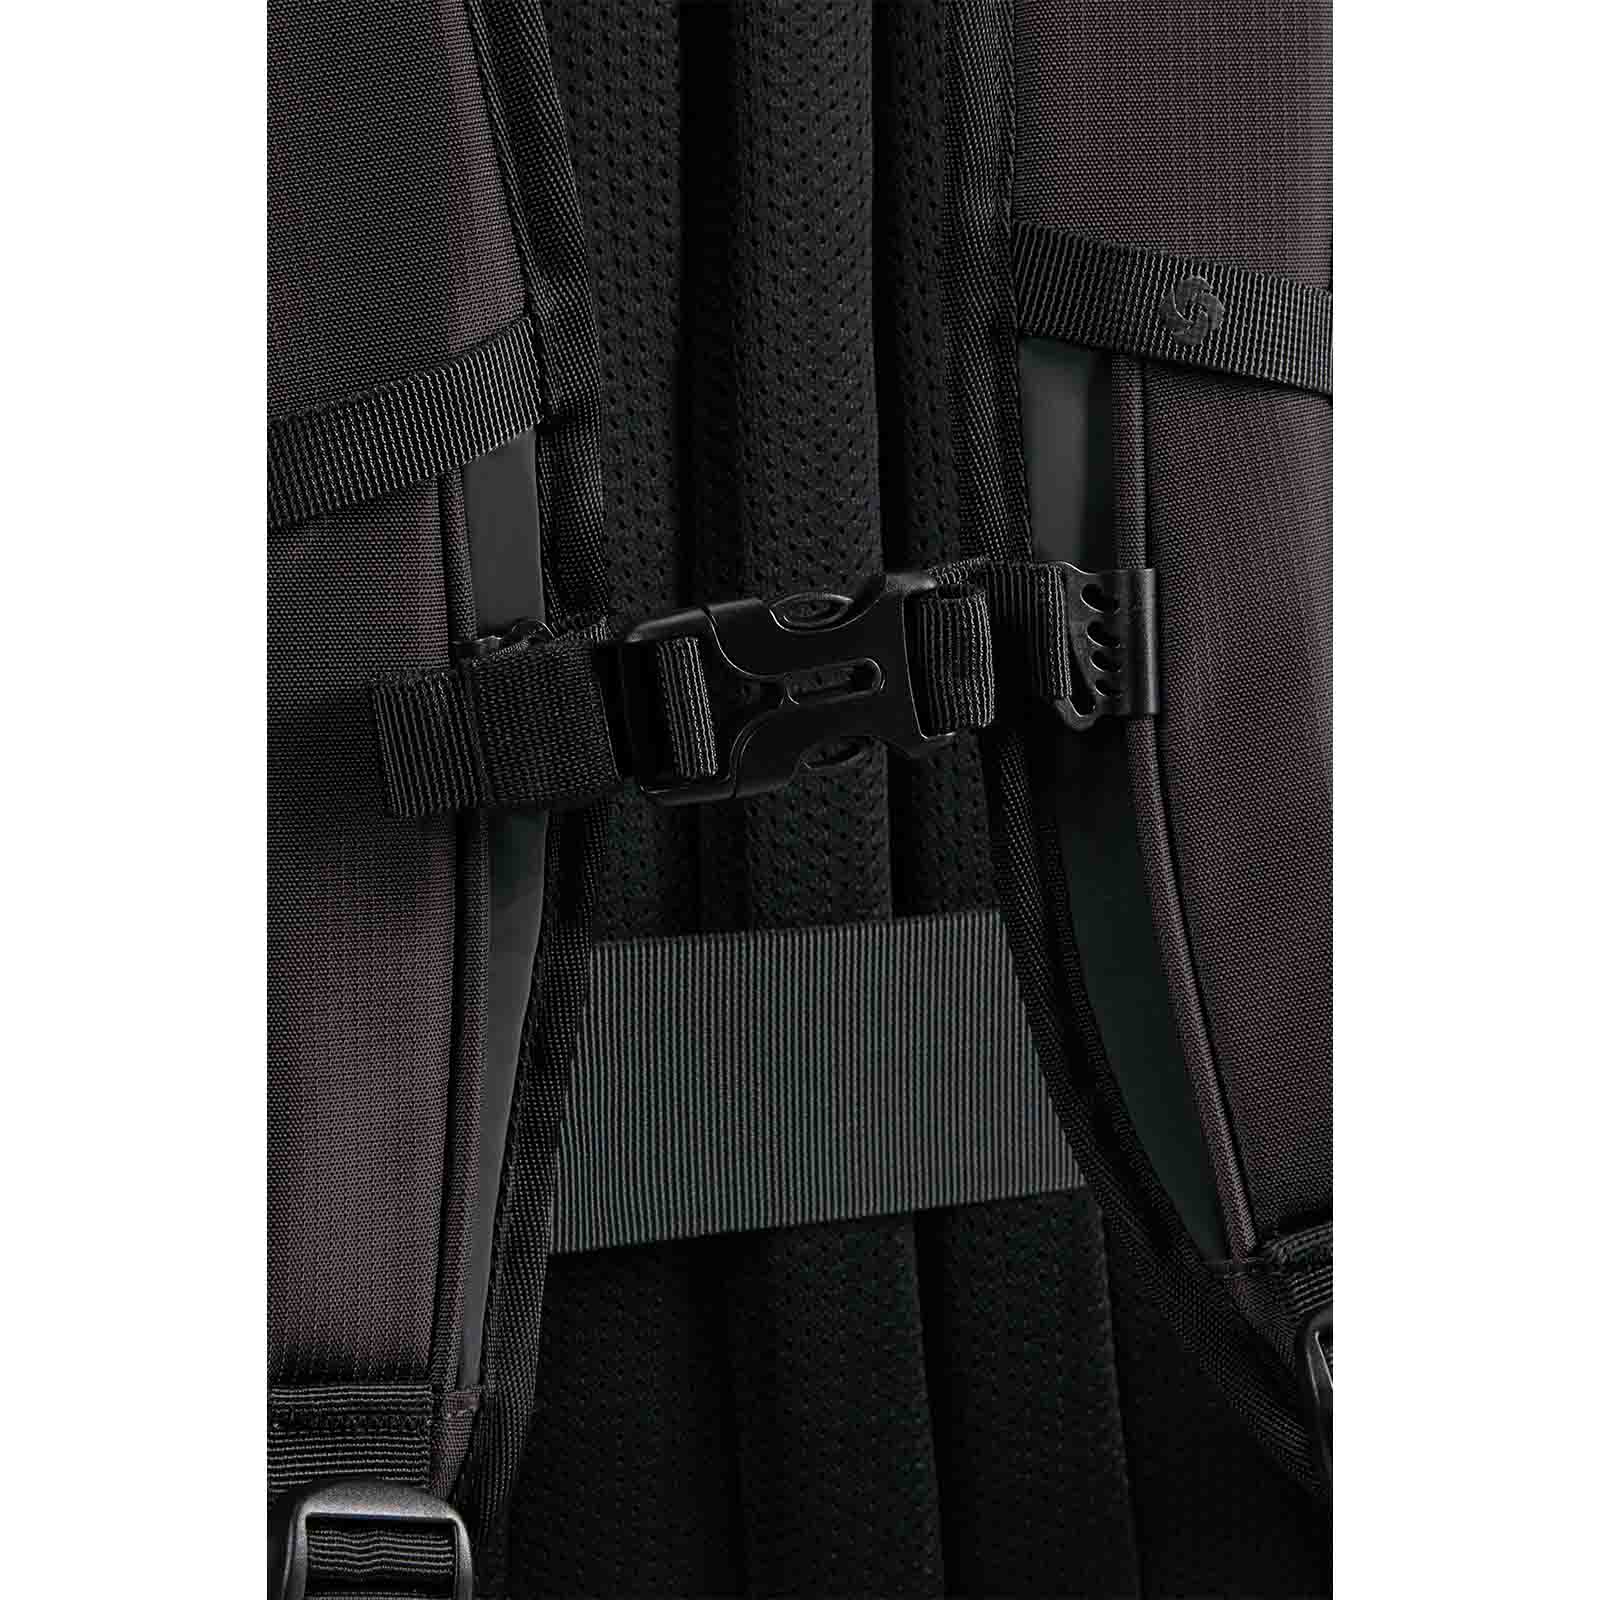 Samsonite-Biz2go-15-Inch-Laptop-Backpack-Black-Clip